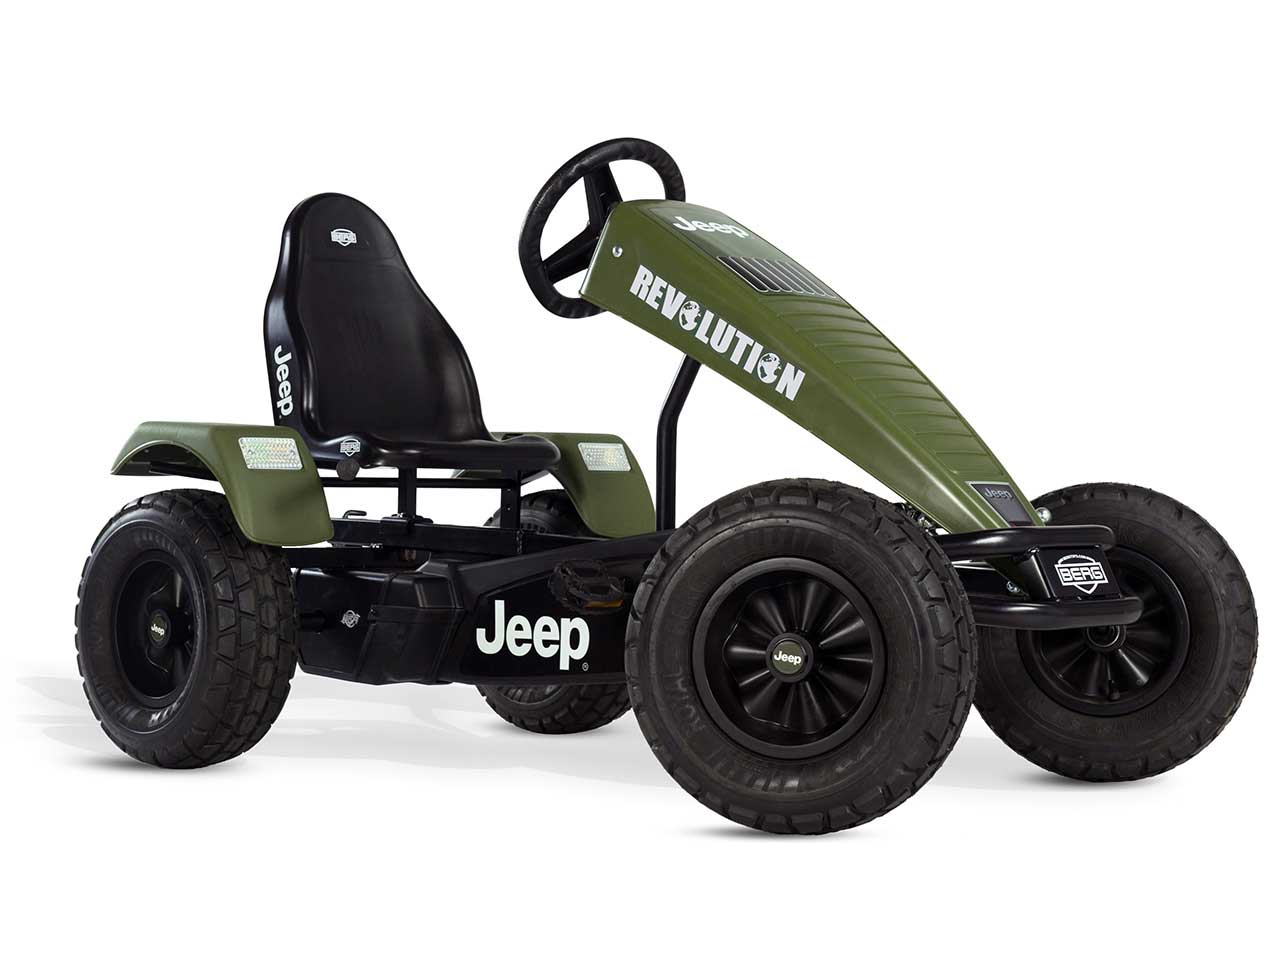 https://www.spielheld.de/out/pictures/master/product/1/07460600-berg-jeep-revolution-pedal-gokart-e-bfr-hybrid.jpg